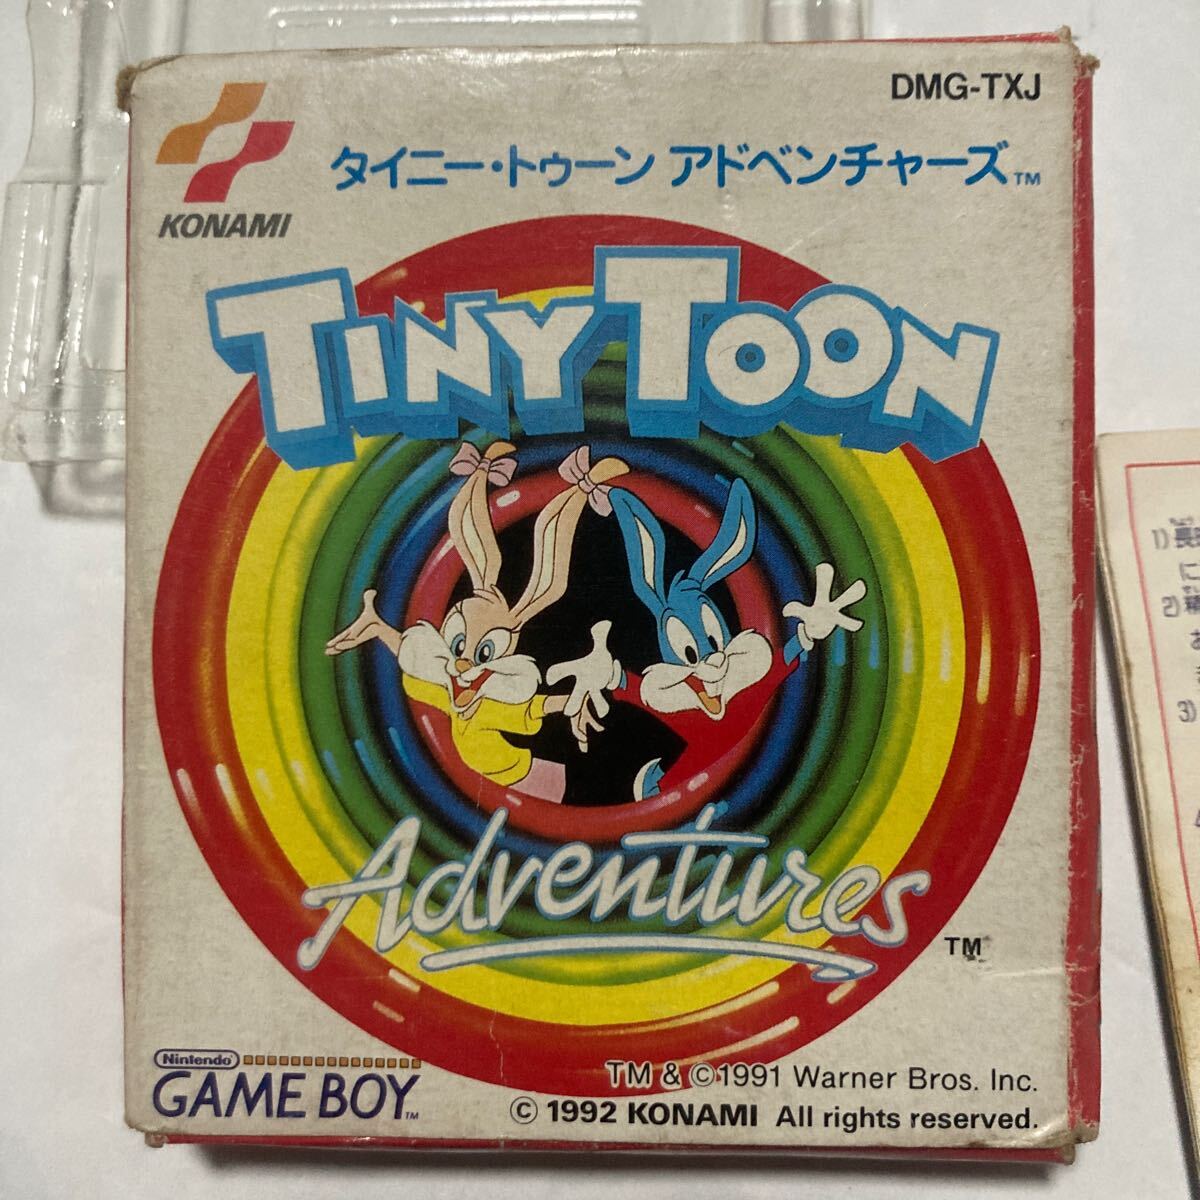 送料無料 レア GB タイニー・トゥーン アドベンチャーズ 箱 説明書付 ゲームボーイ GAMEBOY TINY TOON Adventures DMG-TXJ GBソフト